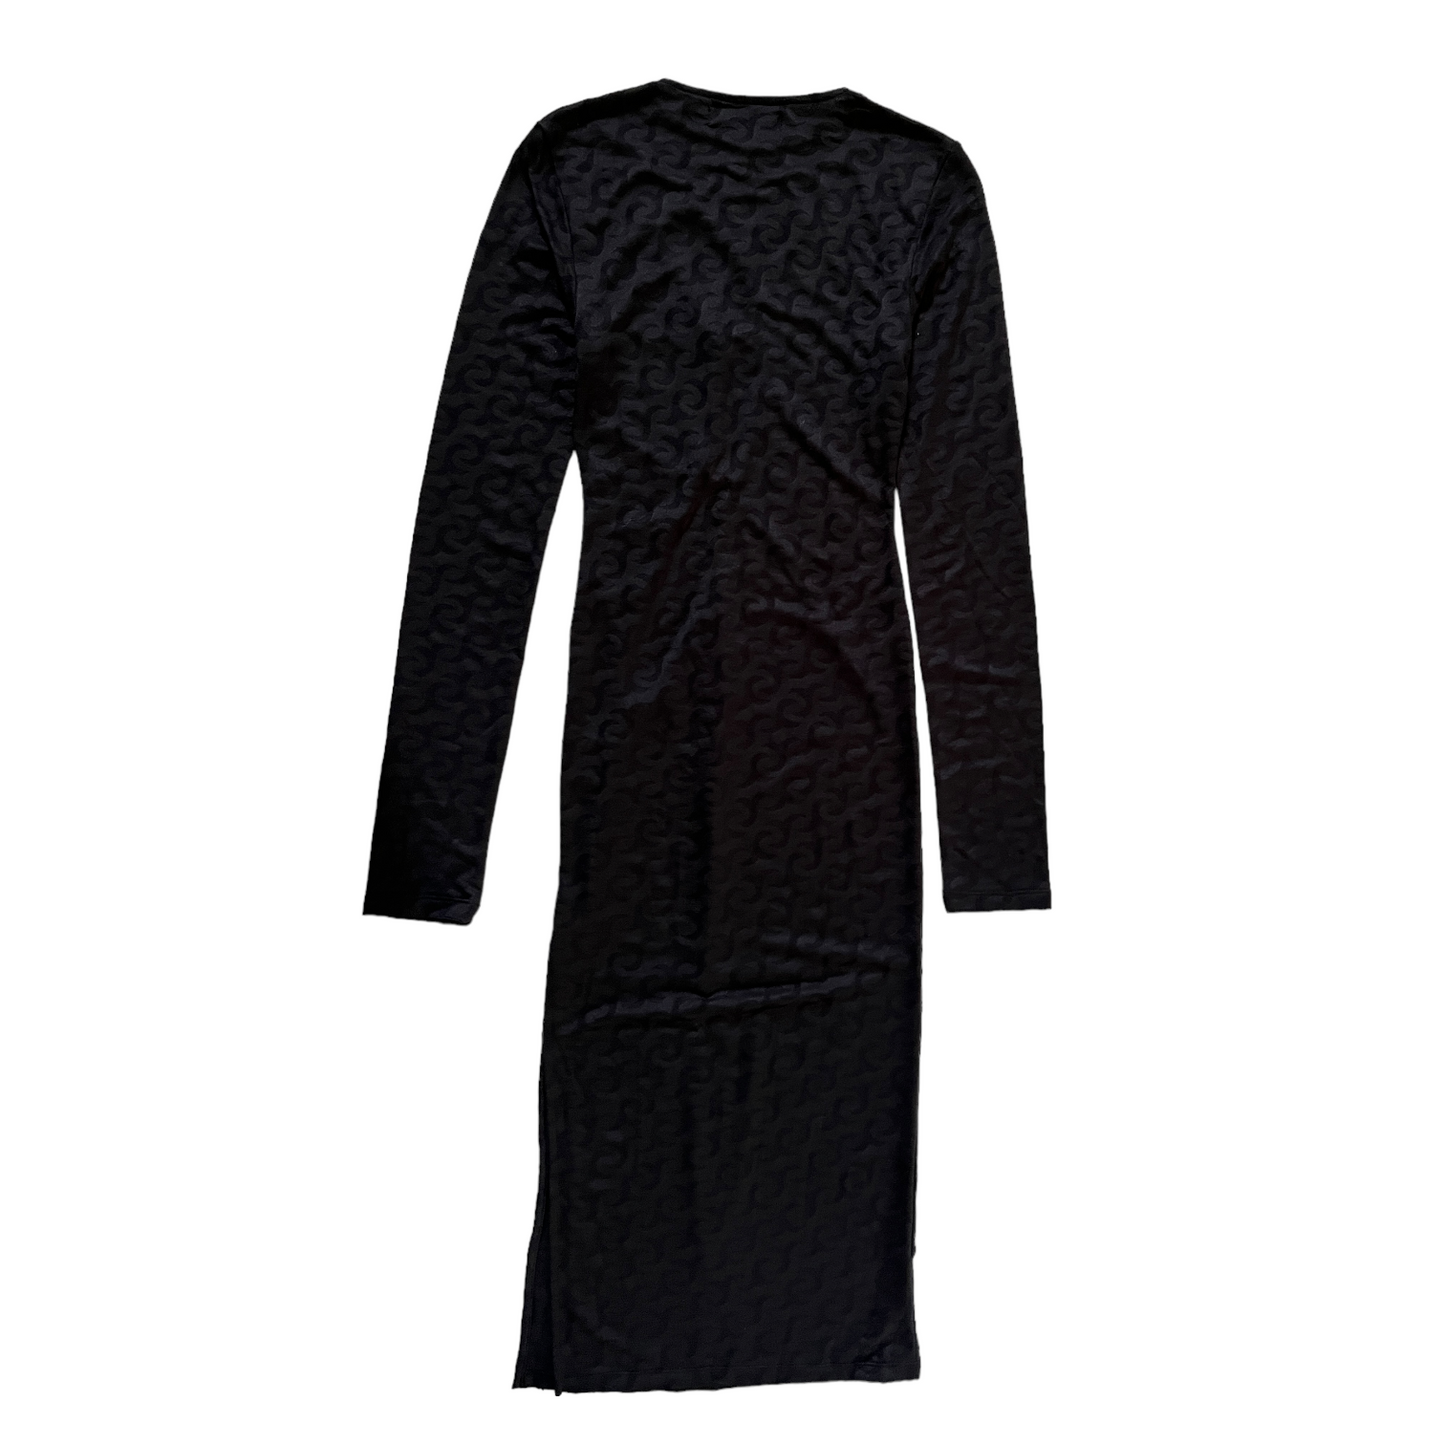 Jade Cropper Cutout Dress in Black